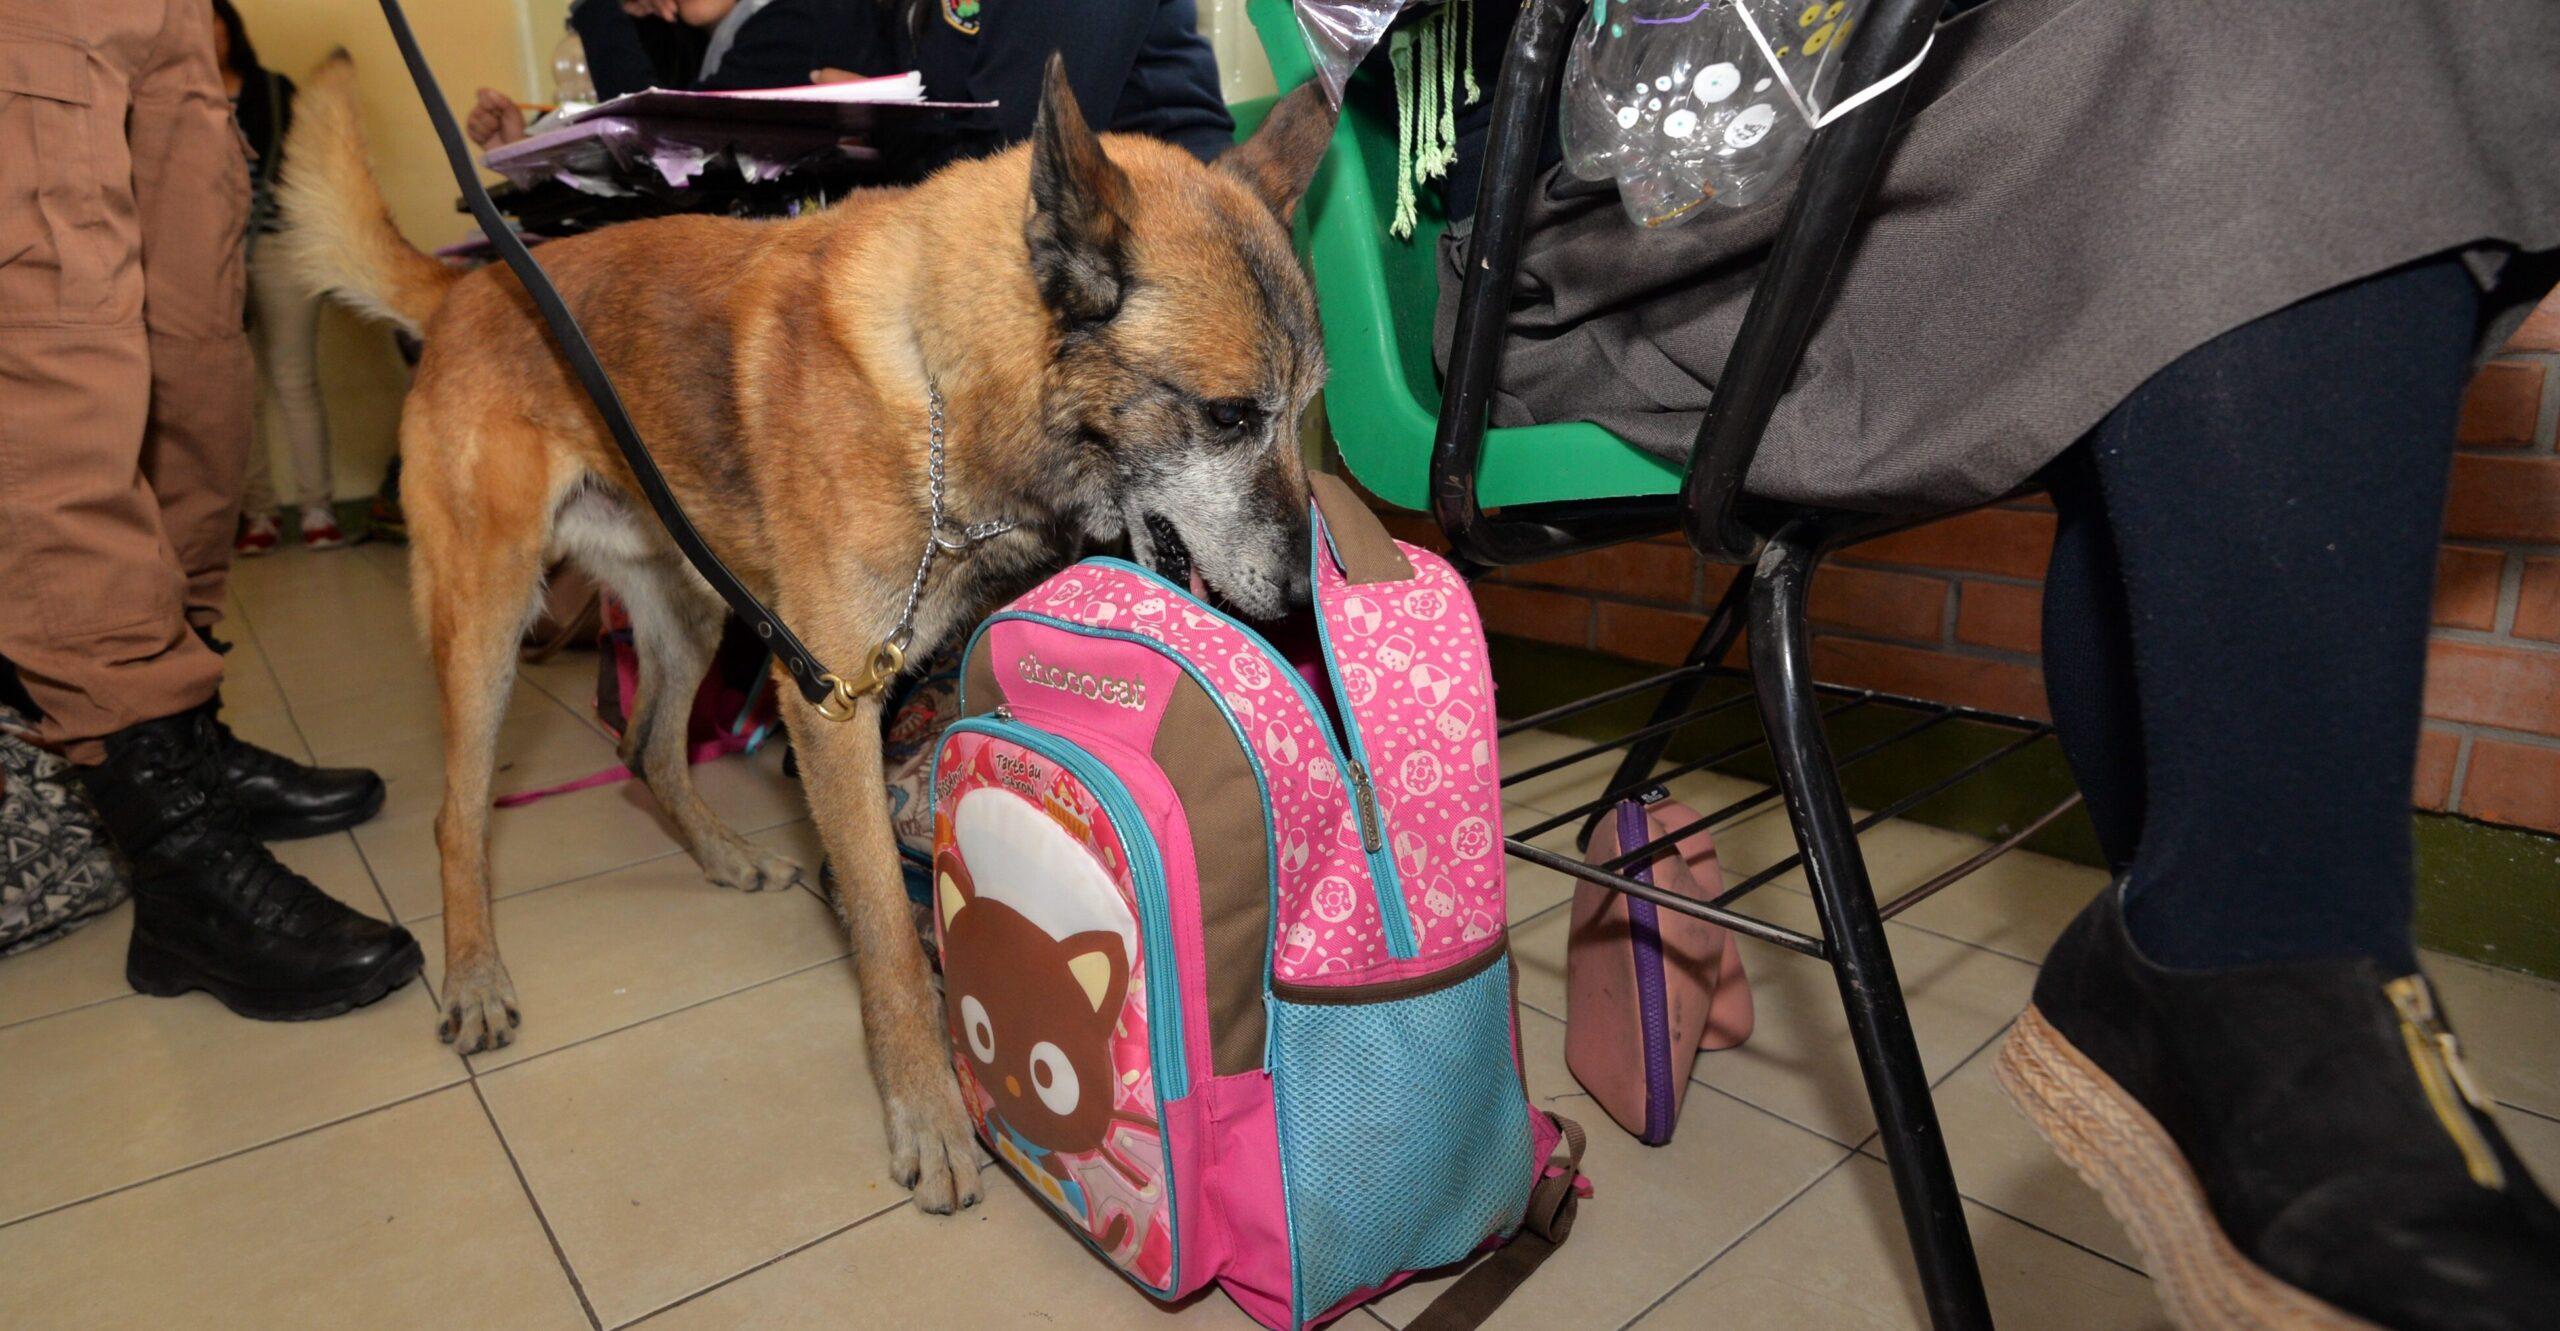 Binomios caninos, padres y maestros inician revisión de mochilas en escuelas de Coahuila